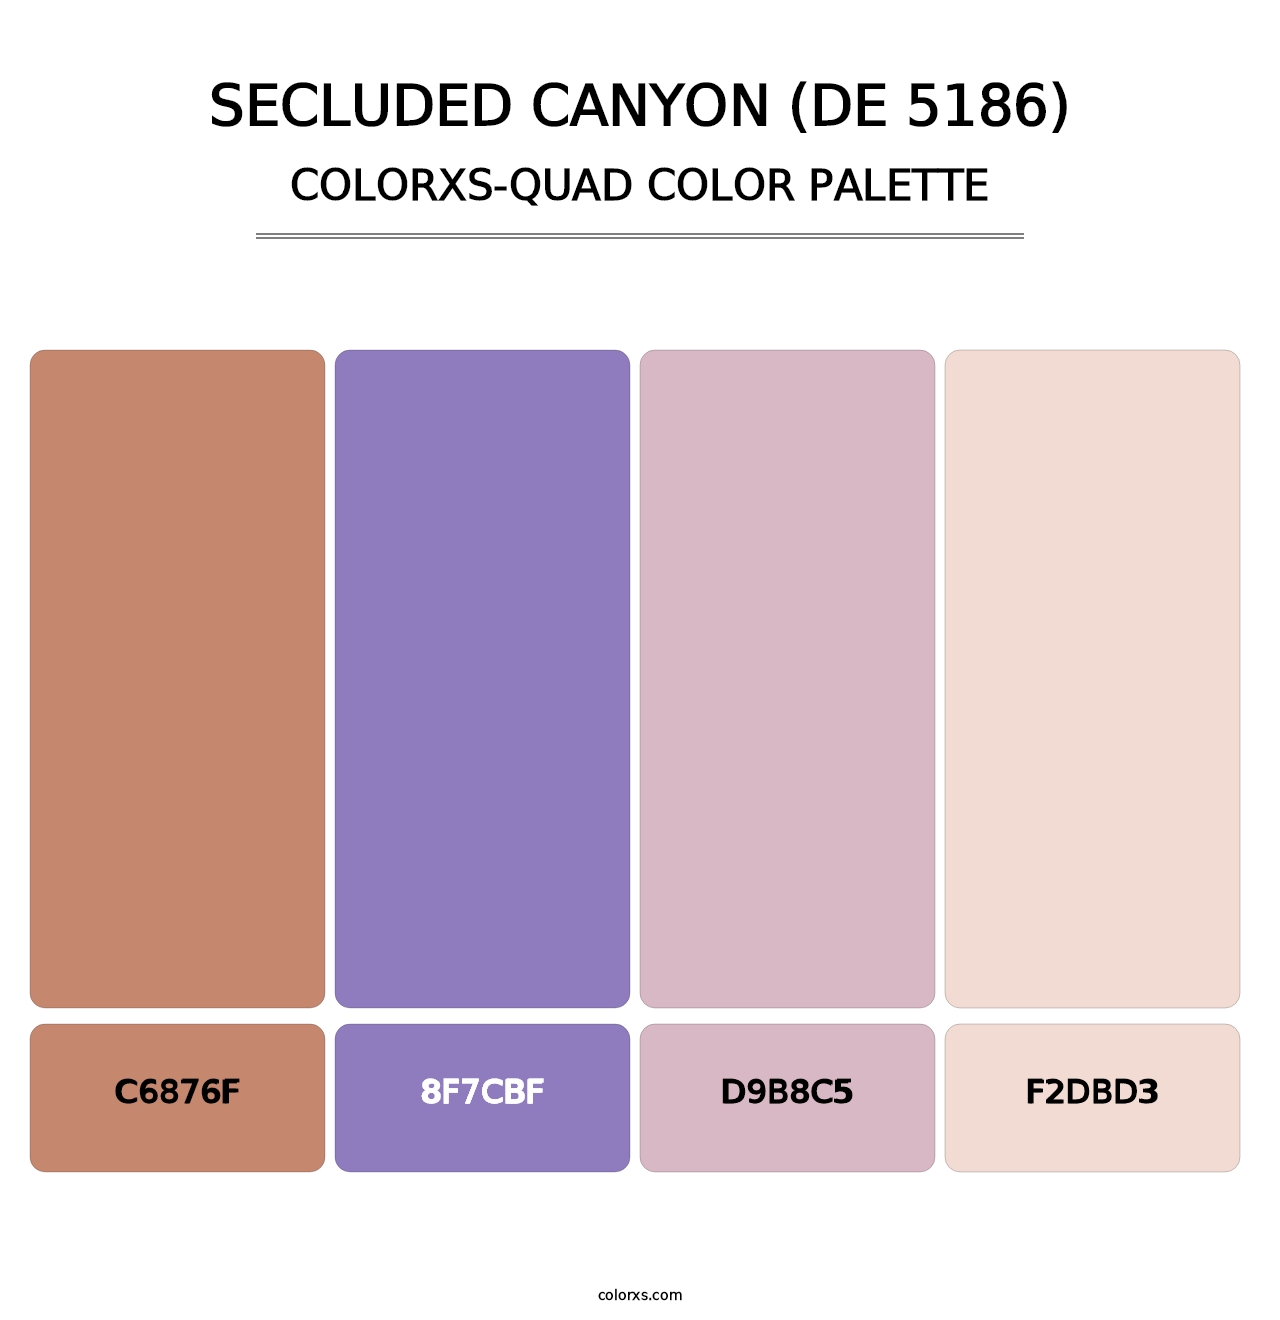 Secluded Canyon (DE 5186) - Colorxs Quad Palette